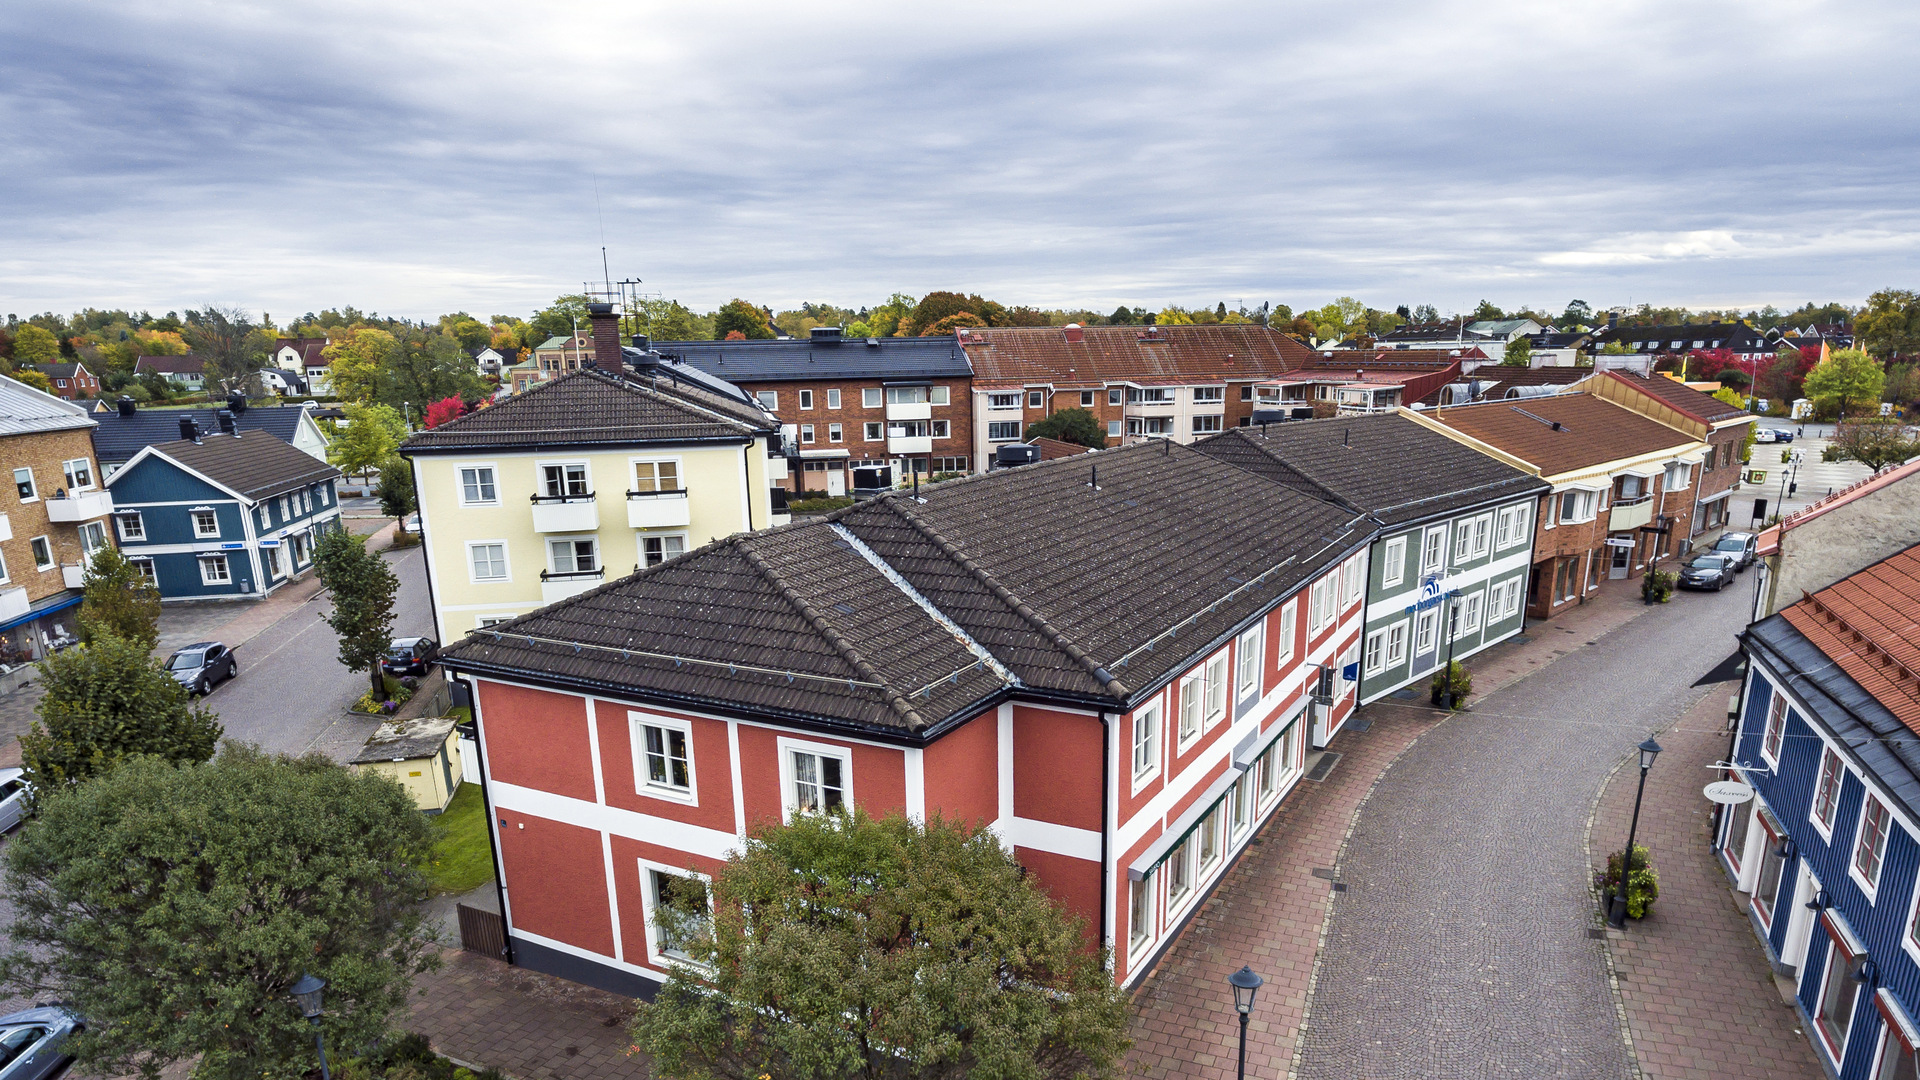 Flygbild Sävsjö kommun föreställande AB Sävsjö Industribyggnader / Sävebo AB:s fastighetsbestånd.